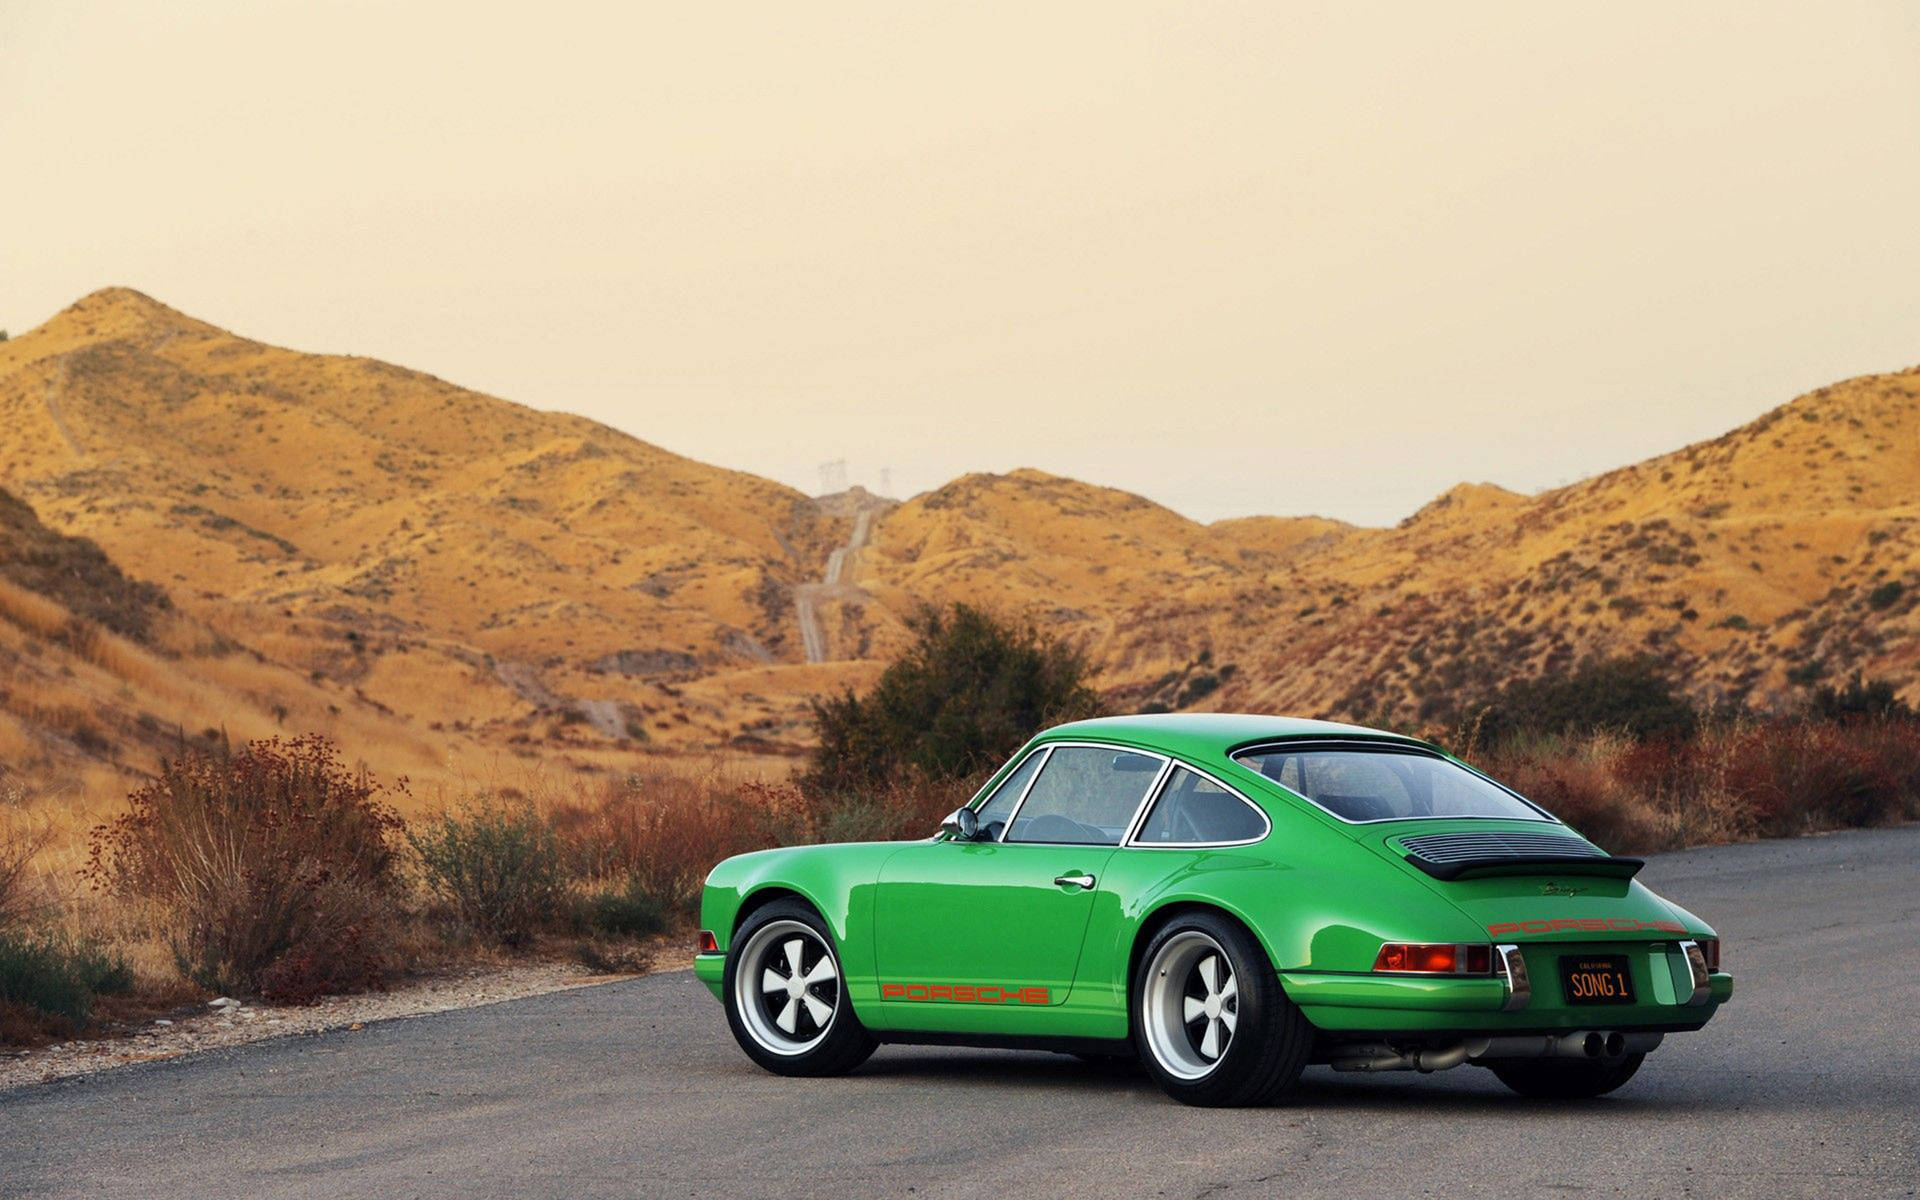 Metallic Green Singer Porsche Background